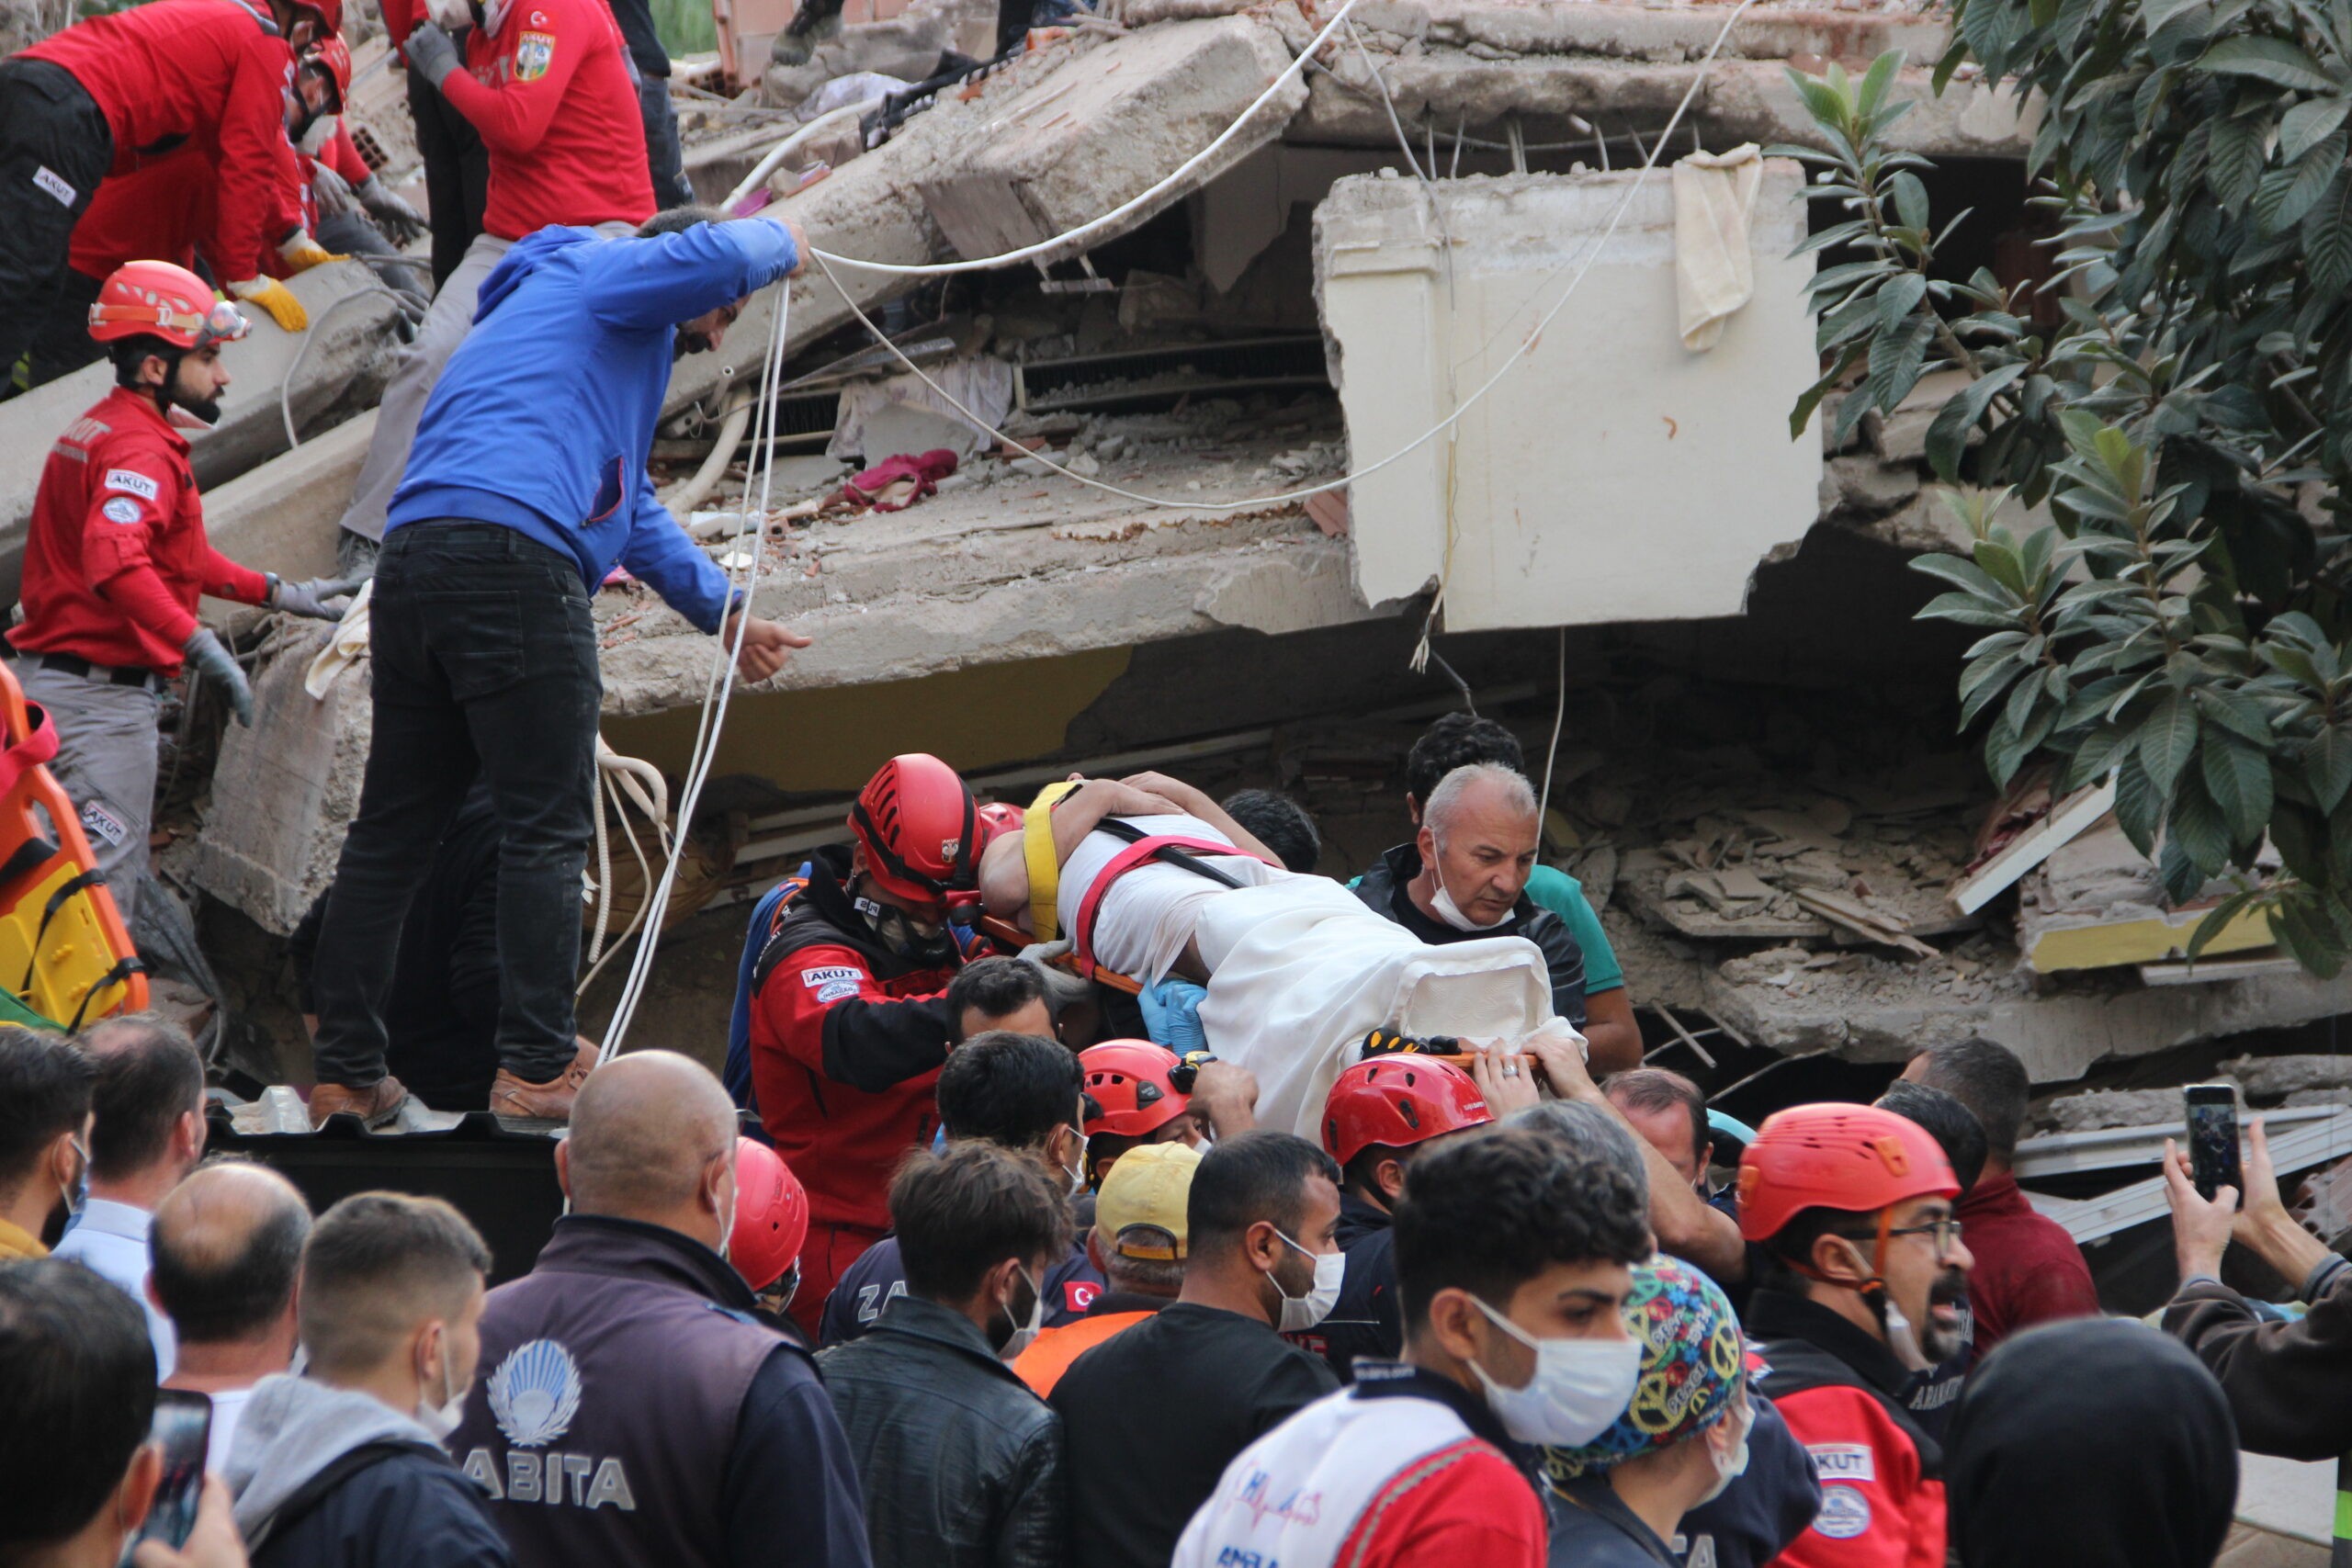 FOTOGALERÍA: Terremoto en Turquía deja al menos 22 muertos - Energía Hoy